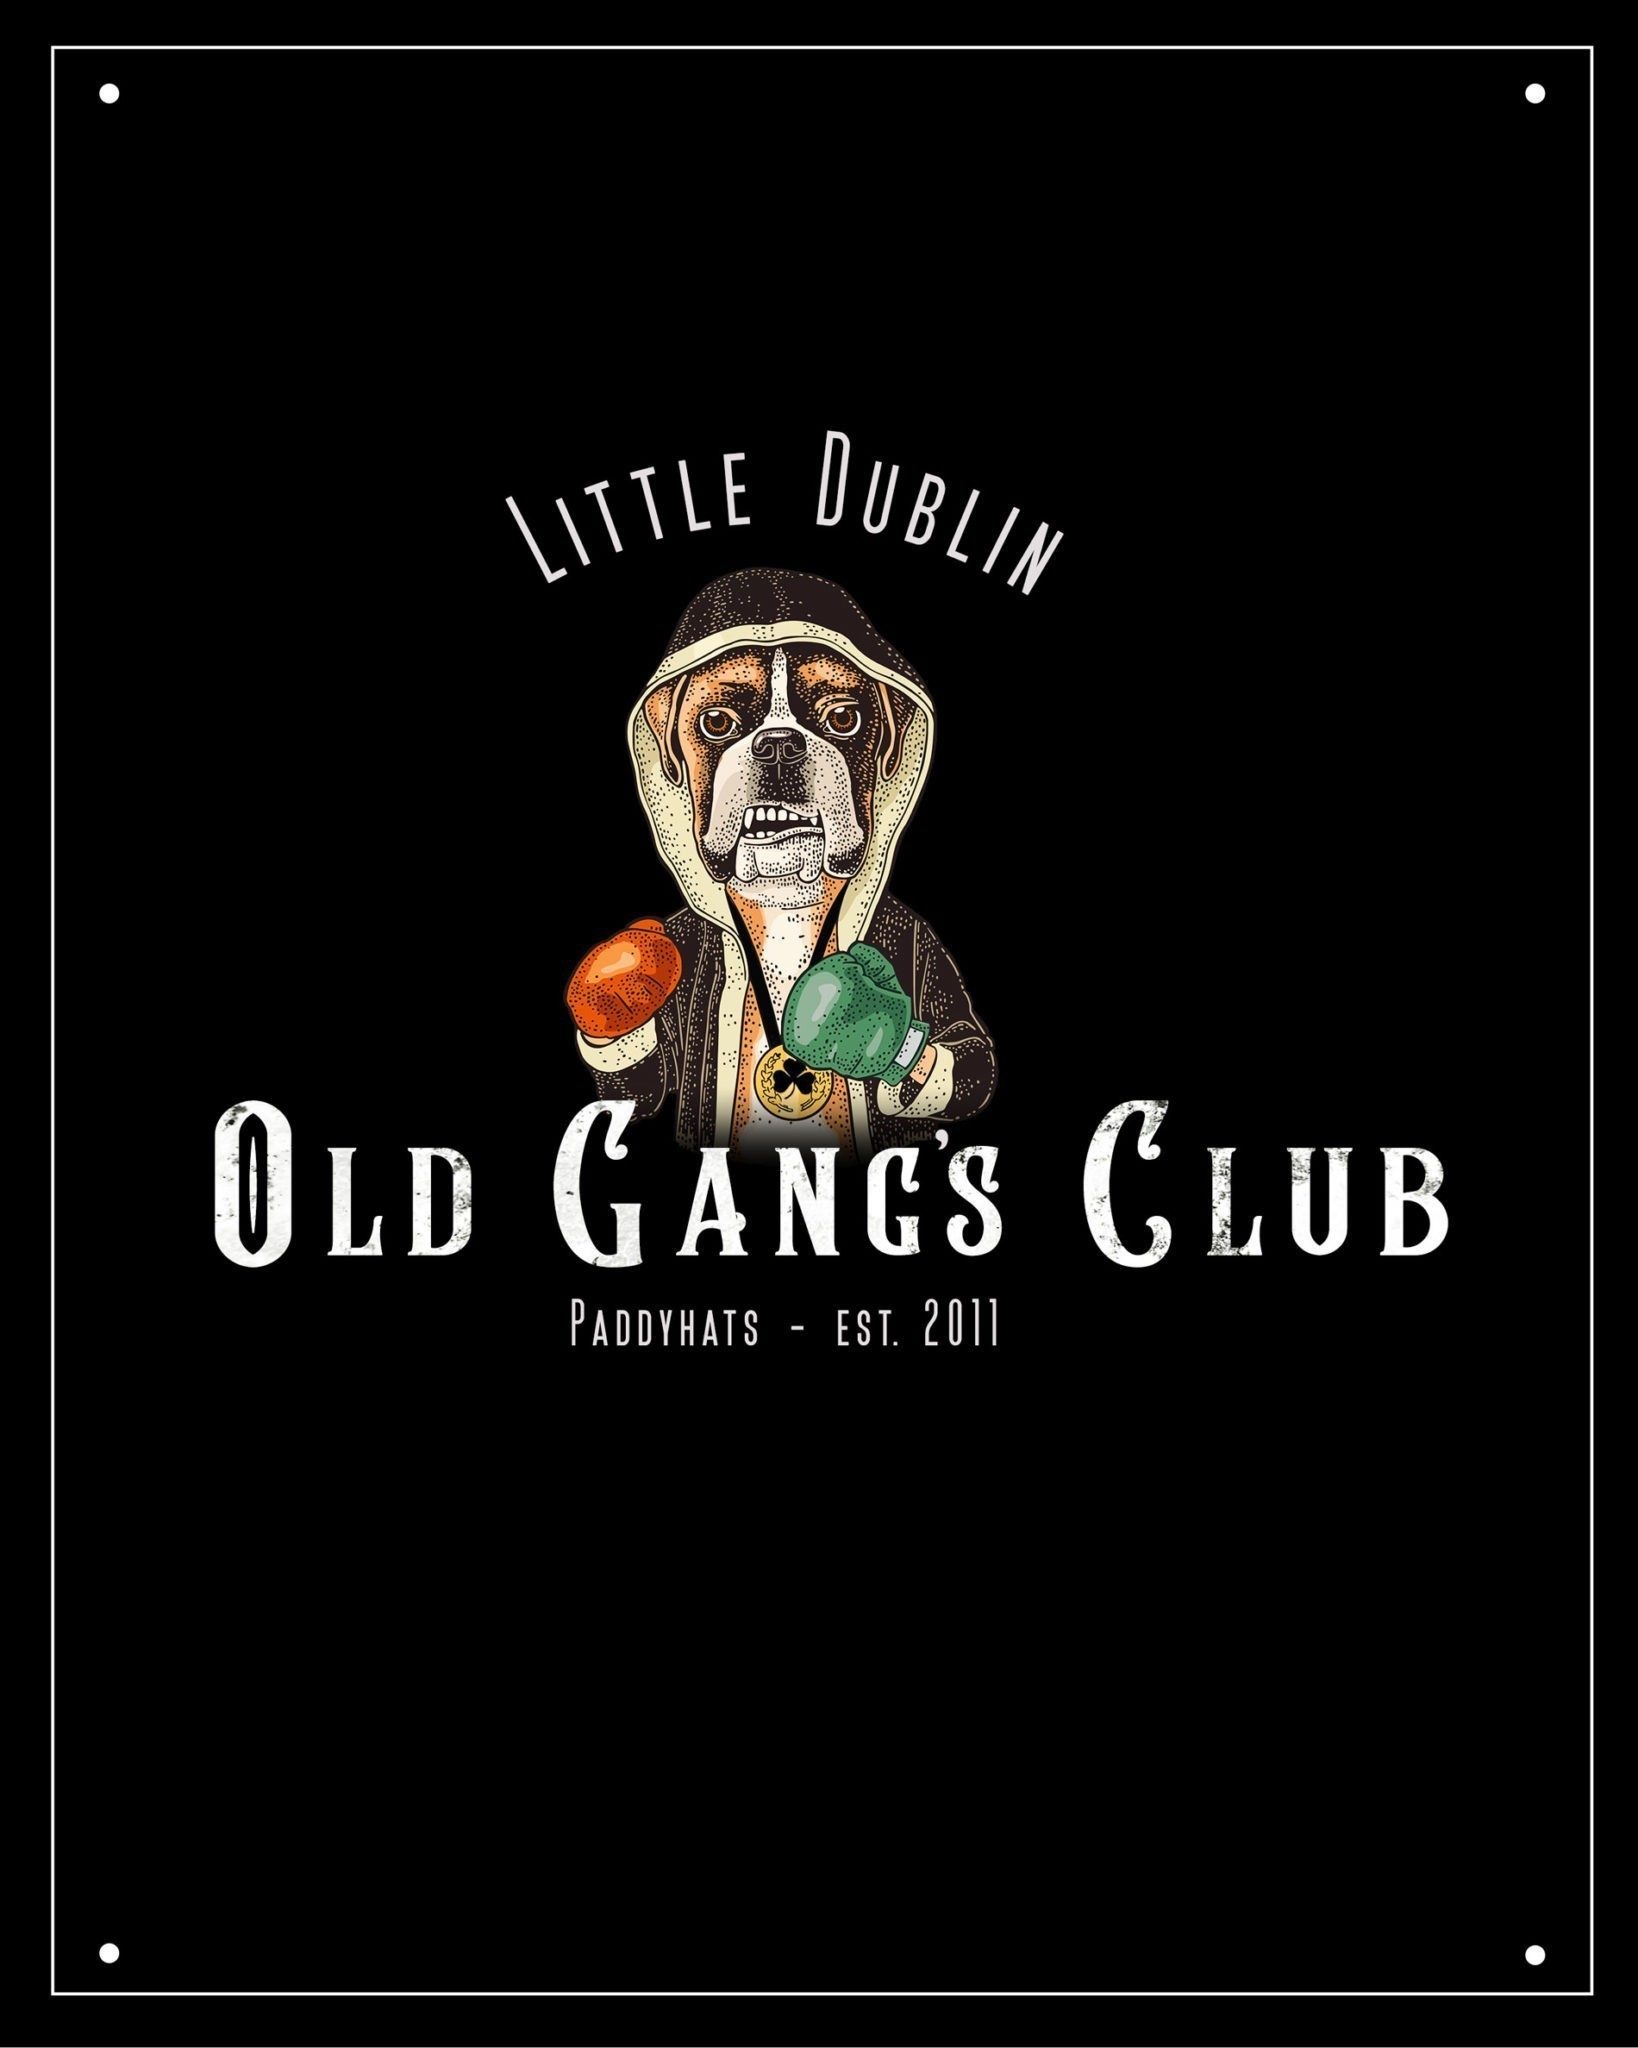 OLD GANG’S Club otevírá své dveře